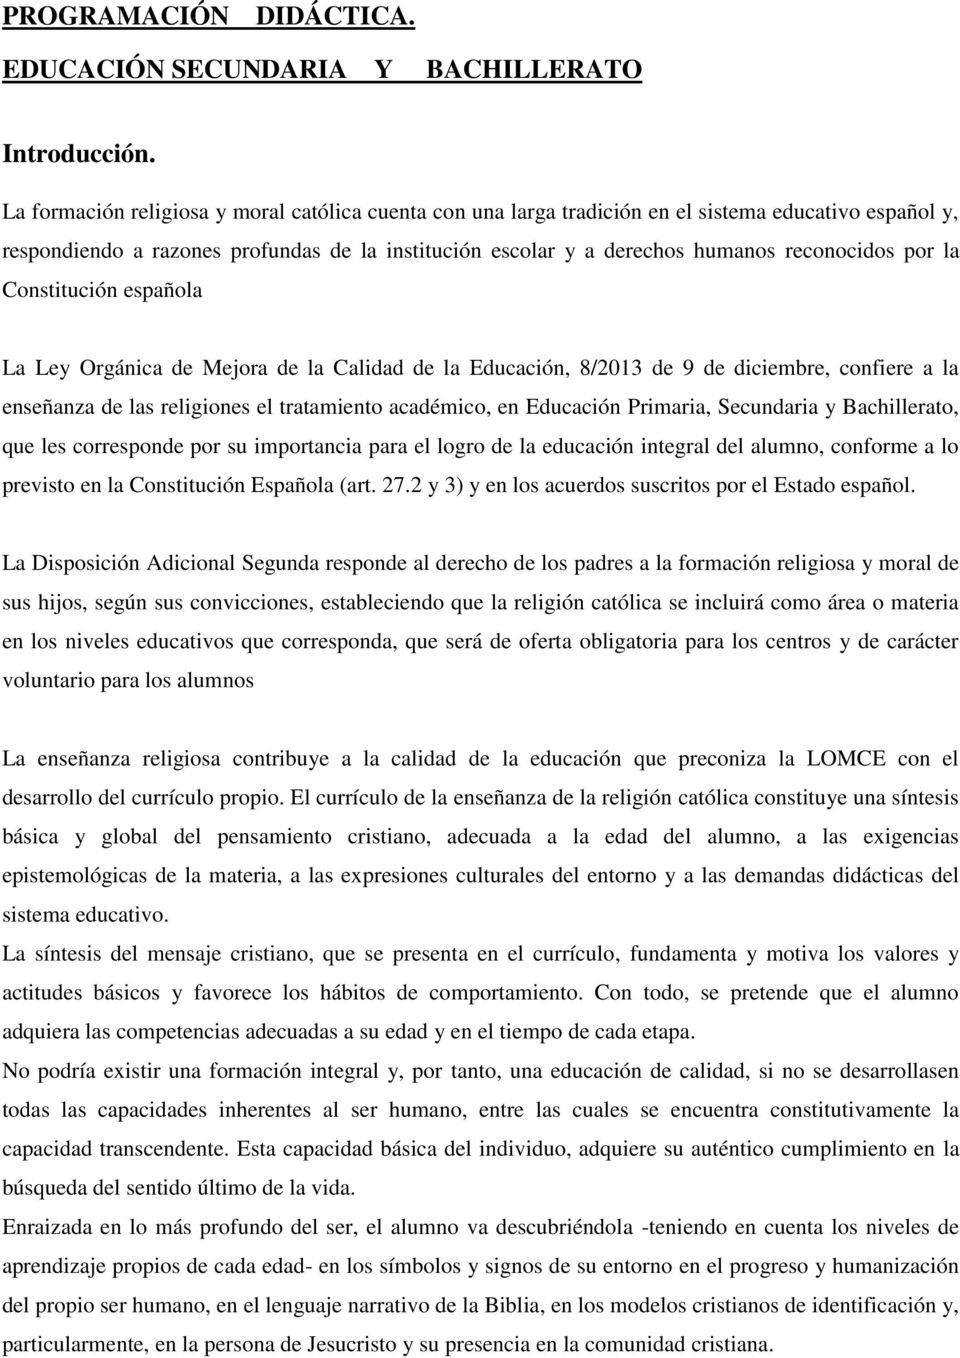 por la Constitución española La Ley Orgánica de Mejora de la Calidad de la Educación, 8/2013 de 9 de diciembre, confiere a la enseñanza de las religiones el tratamiento académico, en Educación